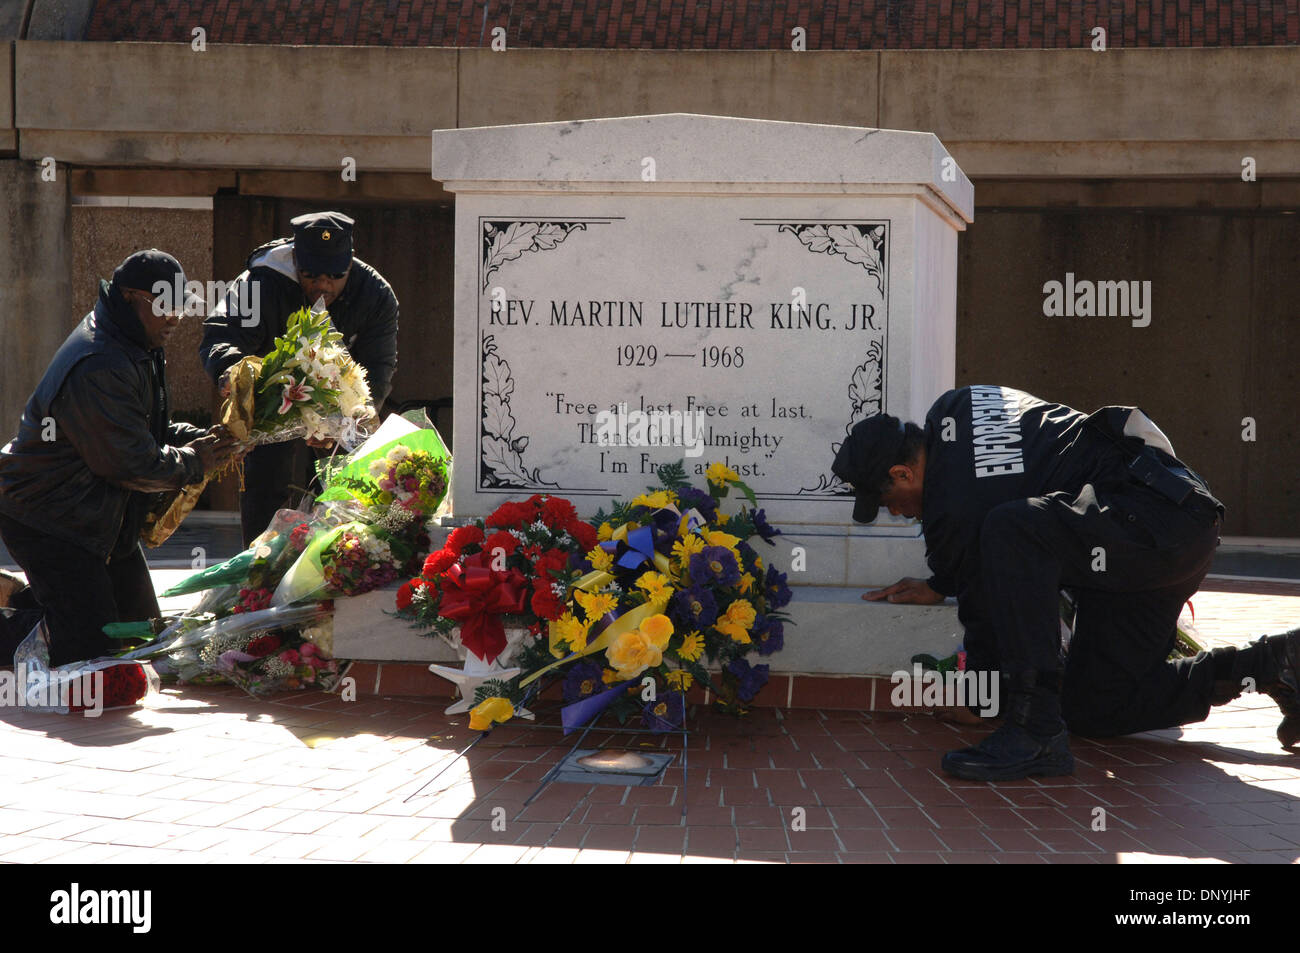 Jan 31, 2006; Atlanta, GA, Stati Uniti d'America; le guardie di sicurezza organizzare fiori a MLK tomba in Atlanta che sono stati lasciati in omaggio a Coretta Scott King, morto ieri. C O R E T T A S C O T T K I N G ( A p r i l 2 7 , 1 9 2 7 - J a n u a r y 3 0 , 2 0 0 6 ) w a s t h e w i f e o f t h e s a l l ' i n c i v i l r i gh t s a t t i v i s t M a r t i n l u t h e r Foto Stock